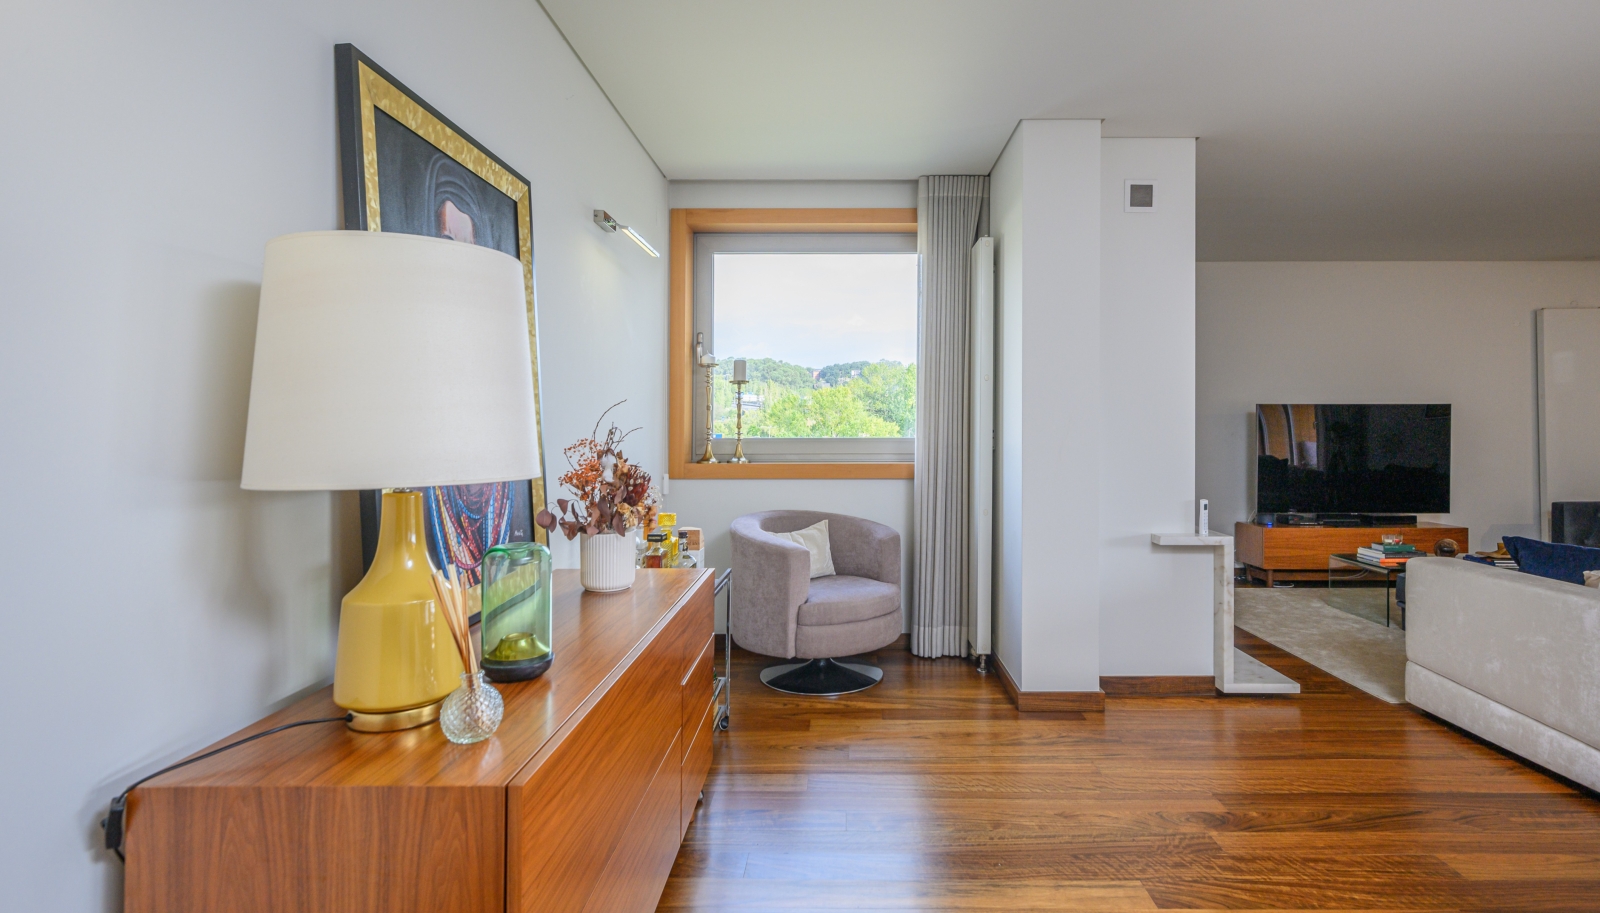 Apartamento com vistas de rio, para venda, em condomínio privado, Porto_241381